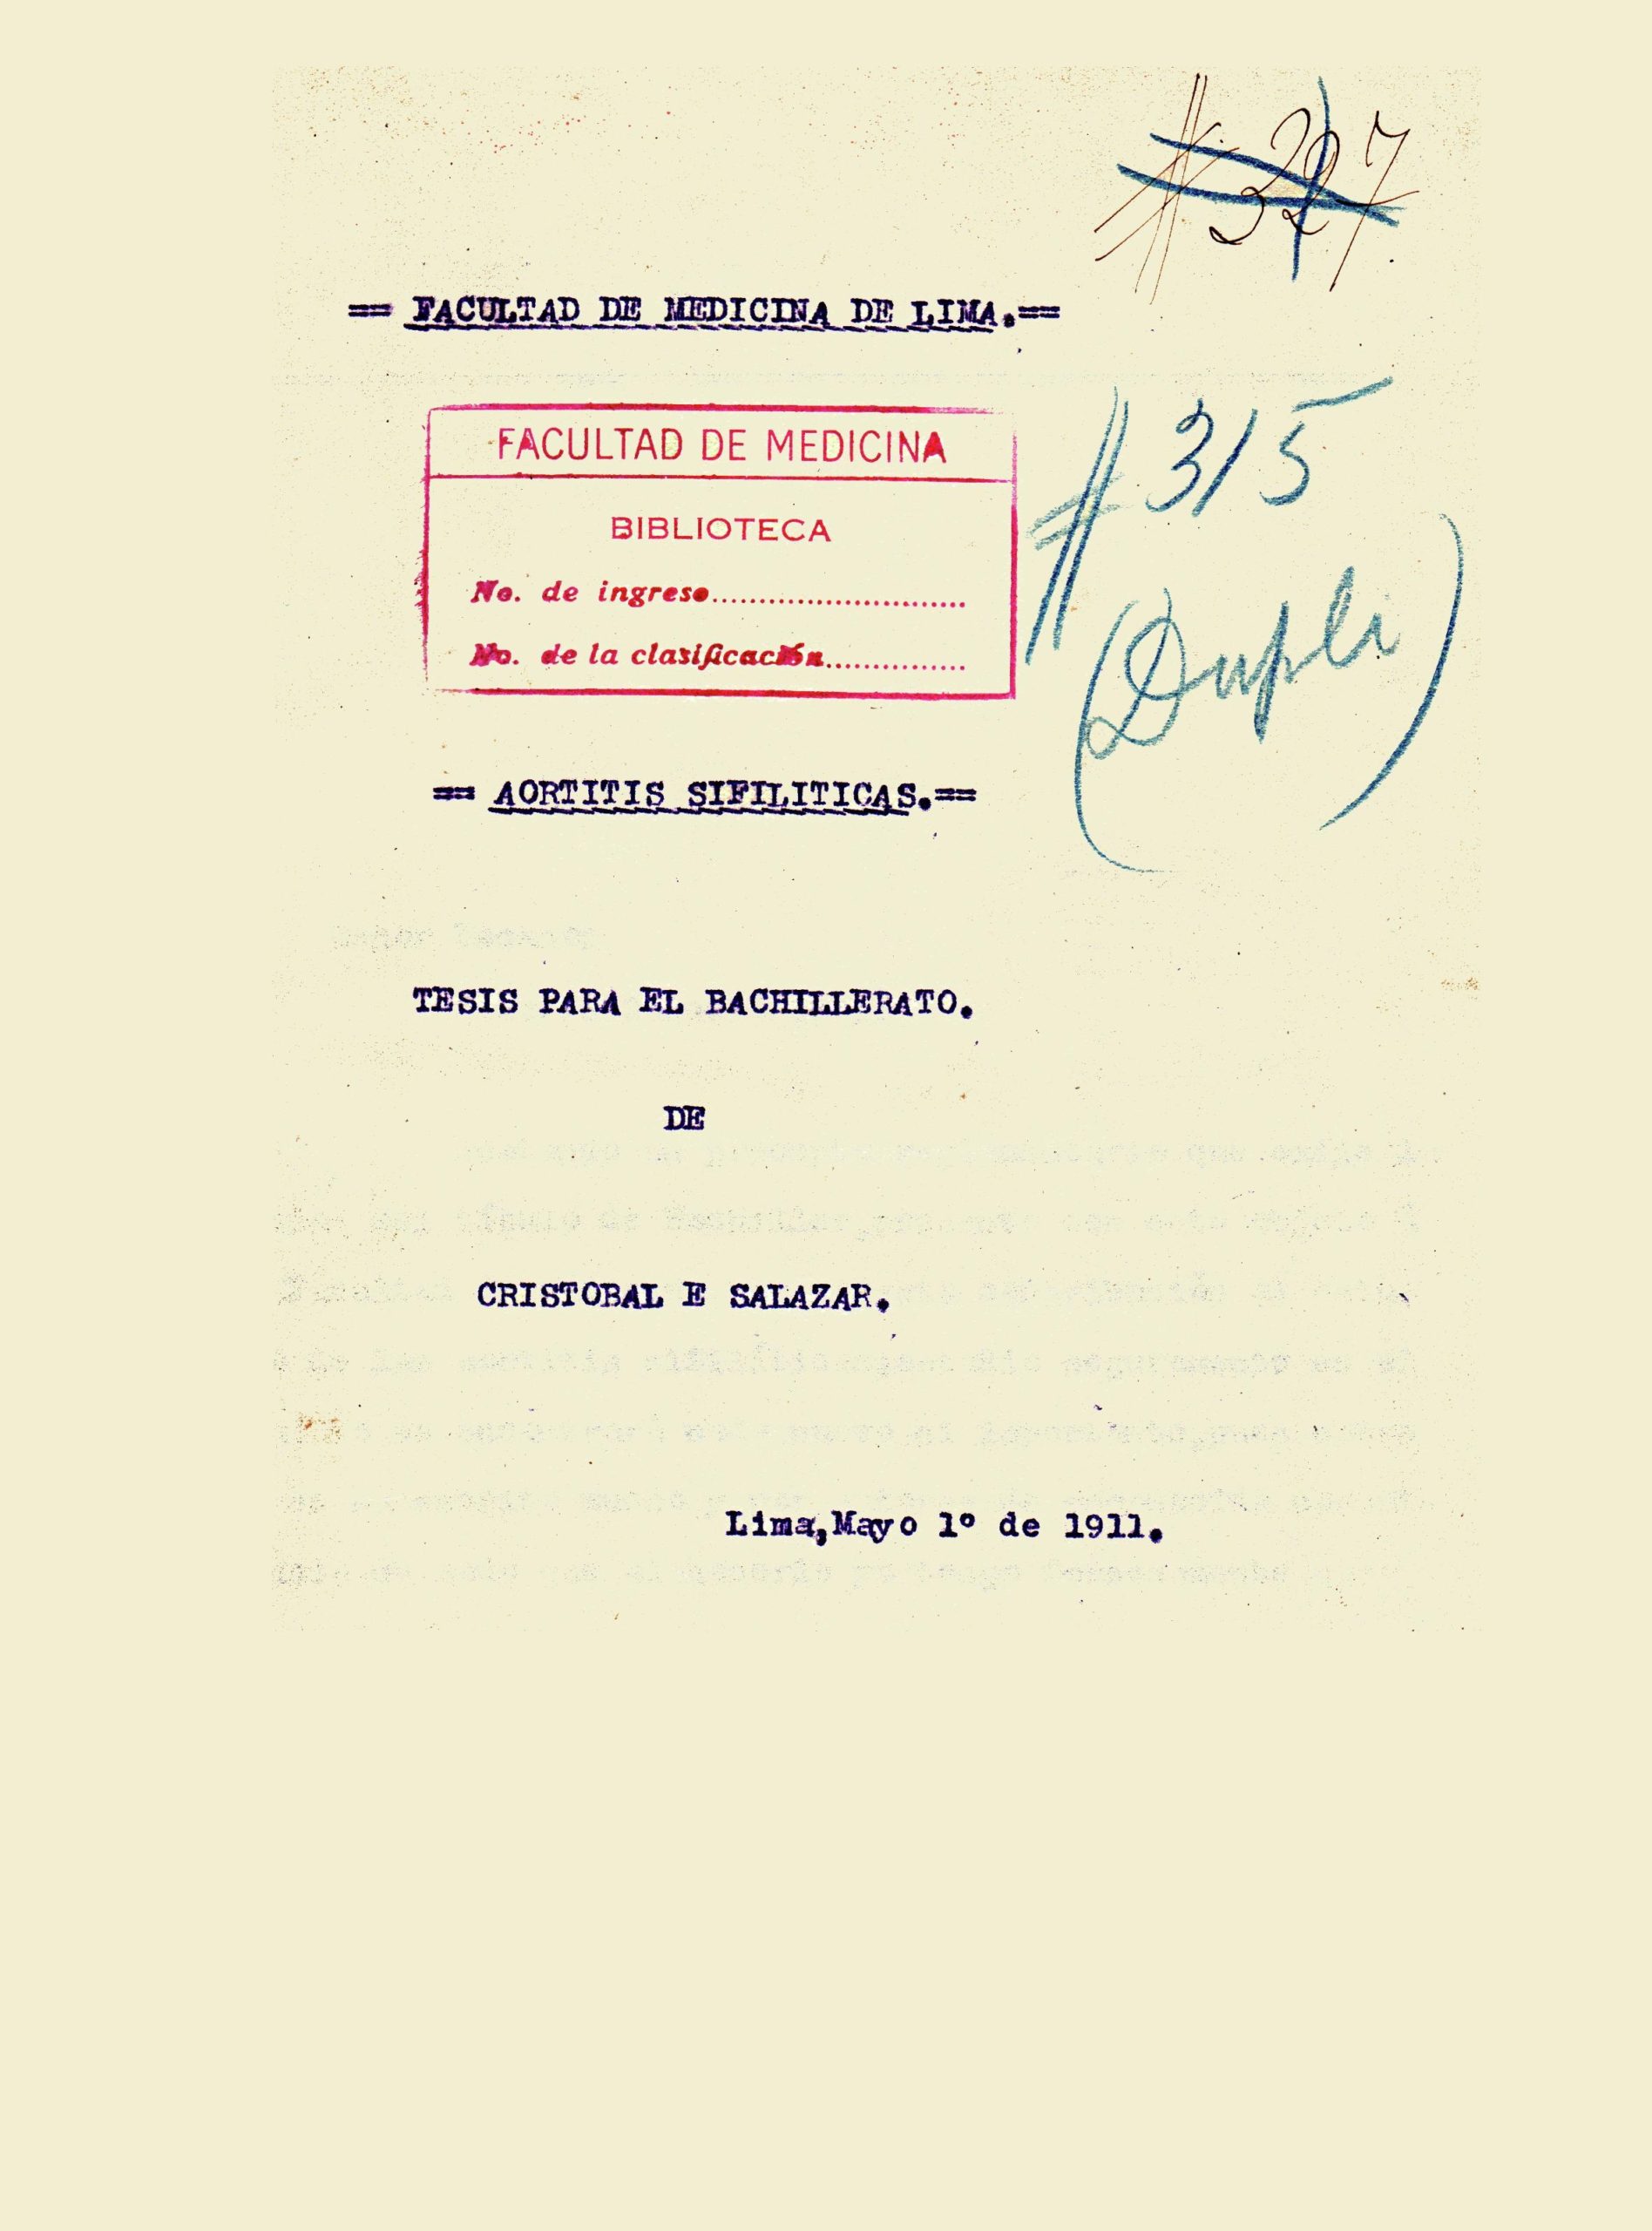 Aortitis sifiliticas_Cristobal Salazar_1911